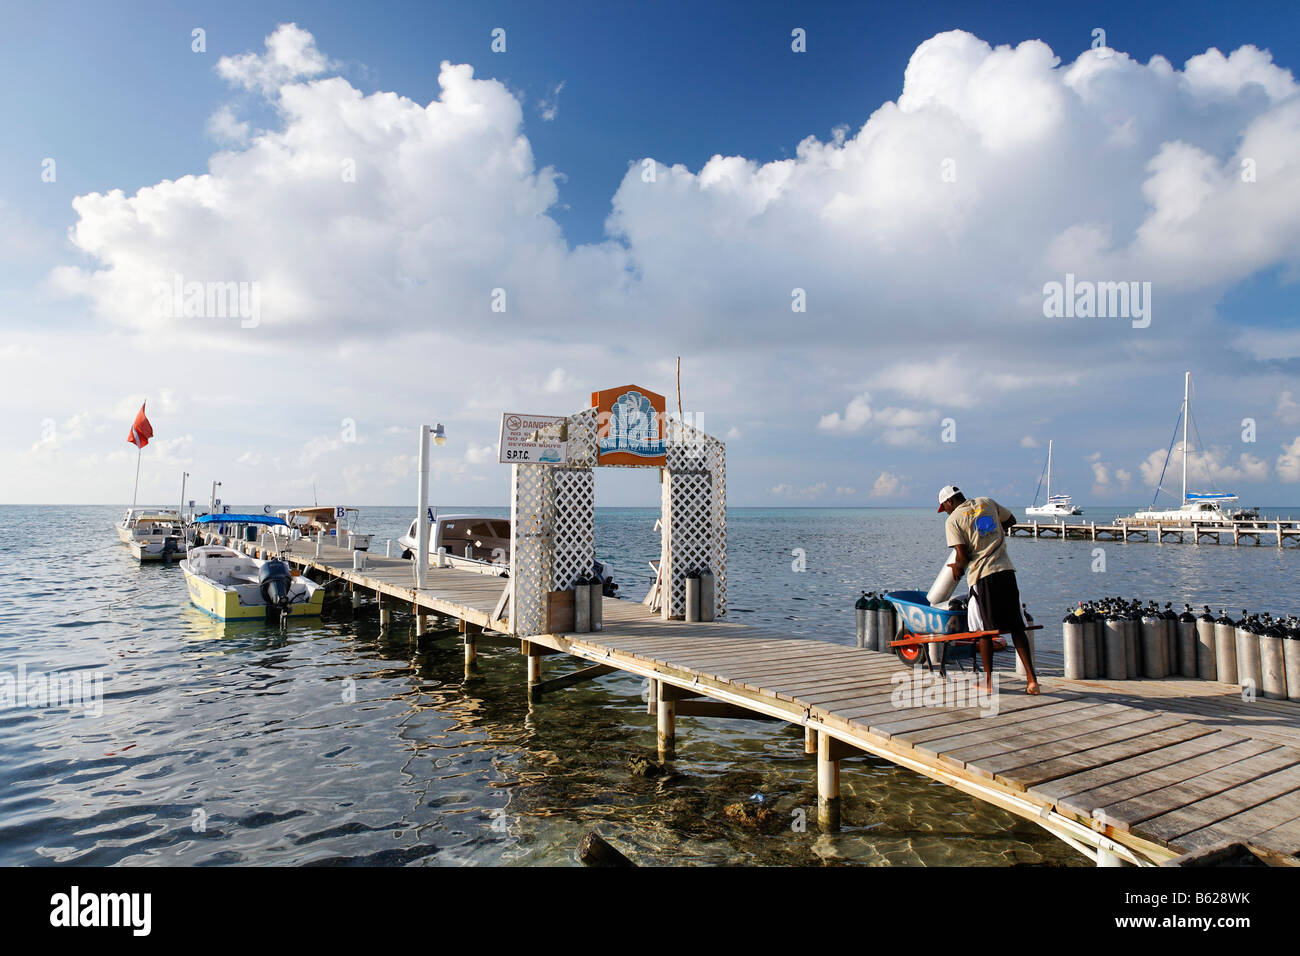 Tauchausrüstung in einem Wagen geladen werden, von einem Mann auf einem Pier, San Pedro, Ambergris Cay Insel, Belize, Mittelamerika Stockfoto